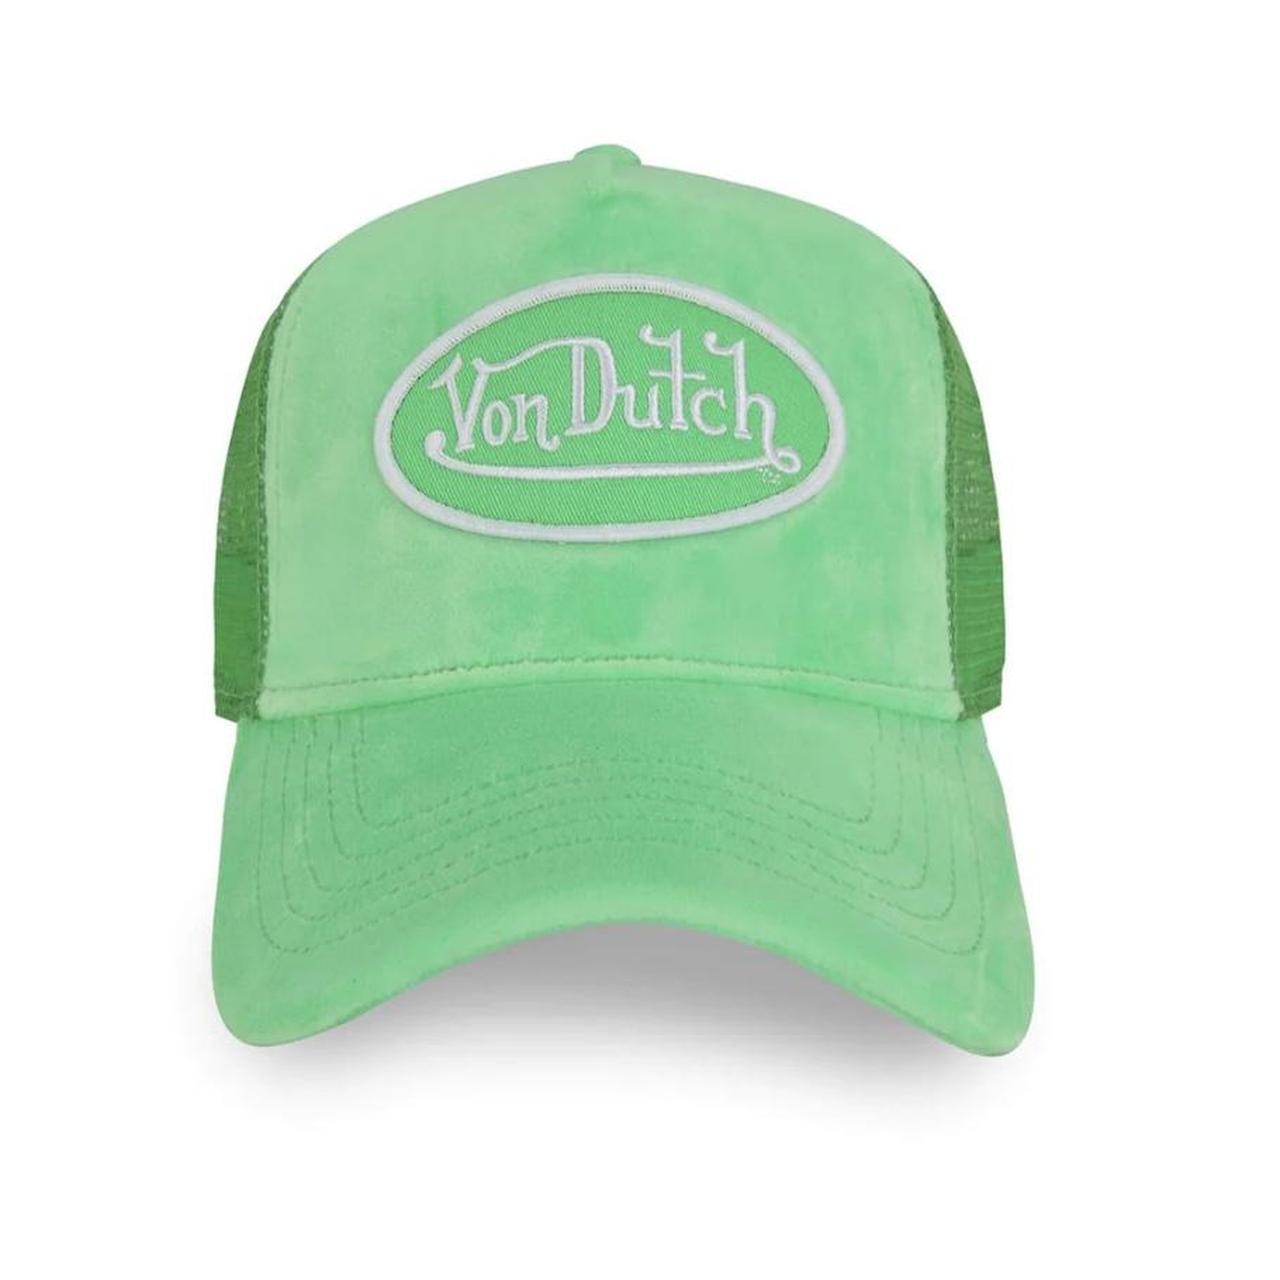 Von Dutch lime green trucker hat. Perfect condition...